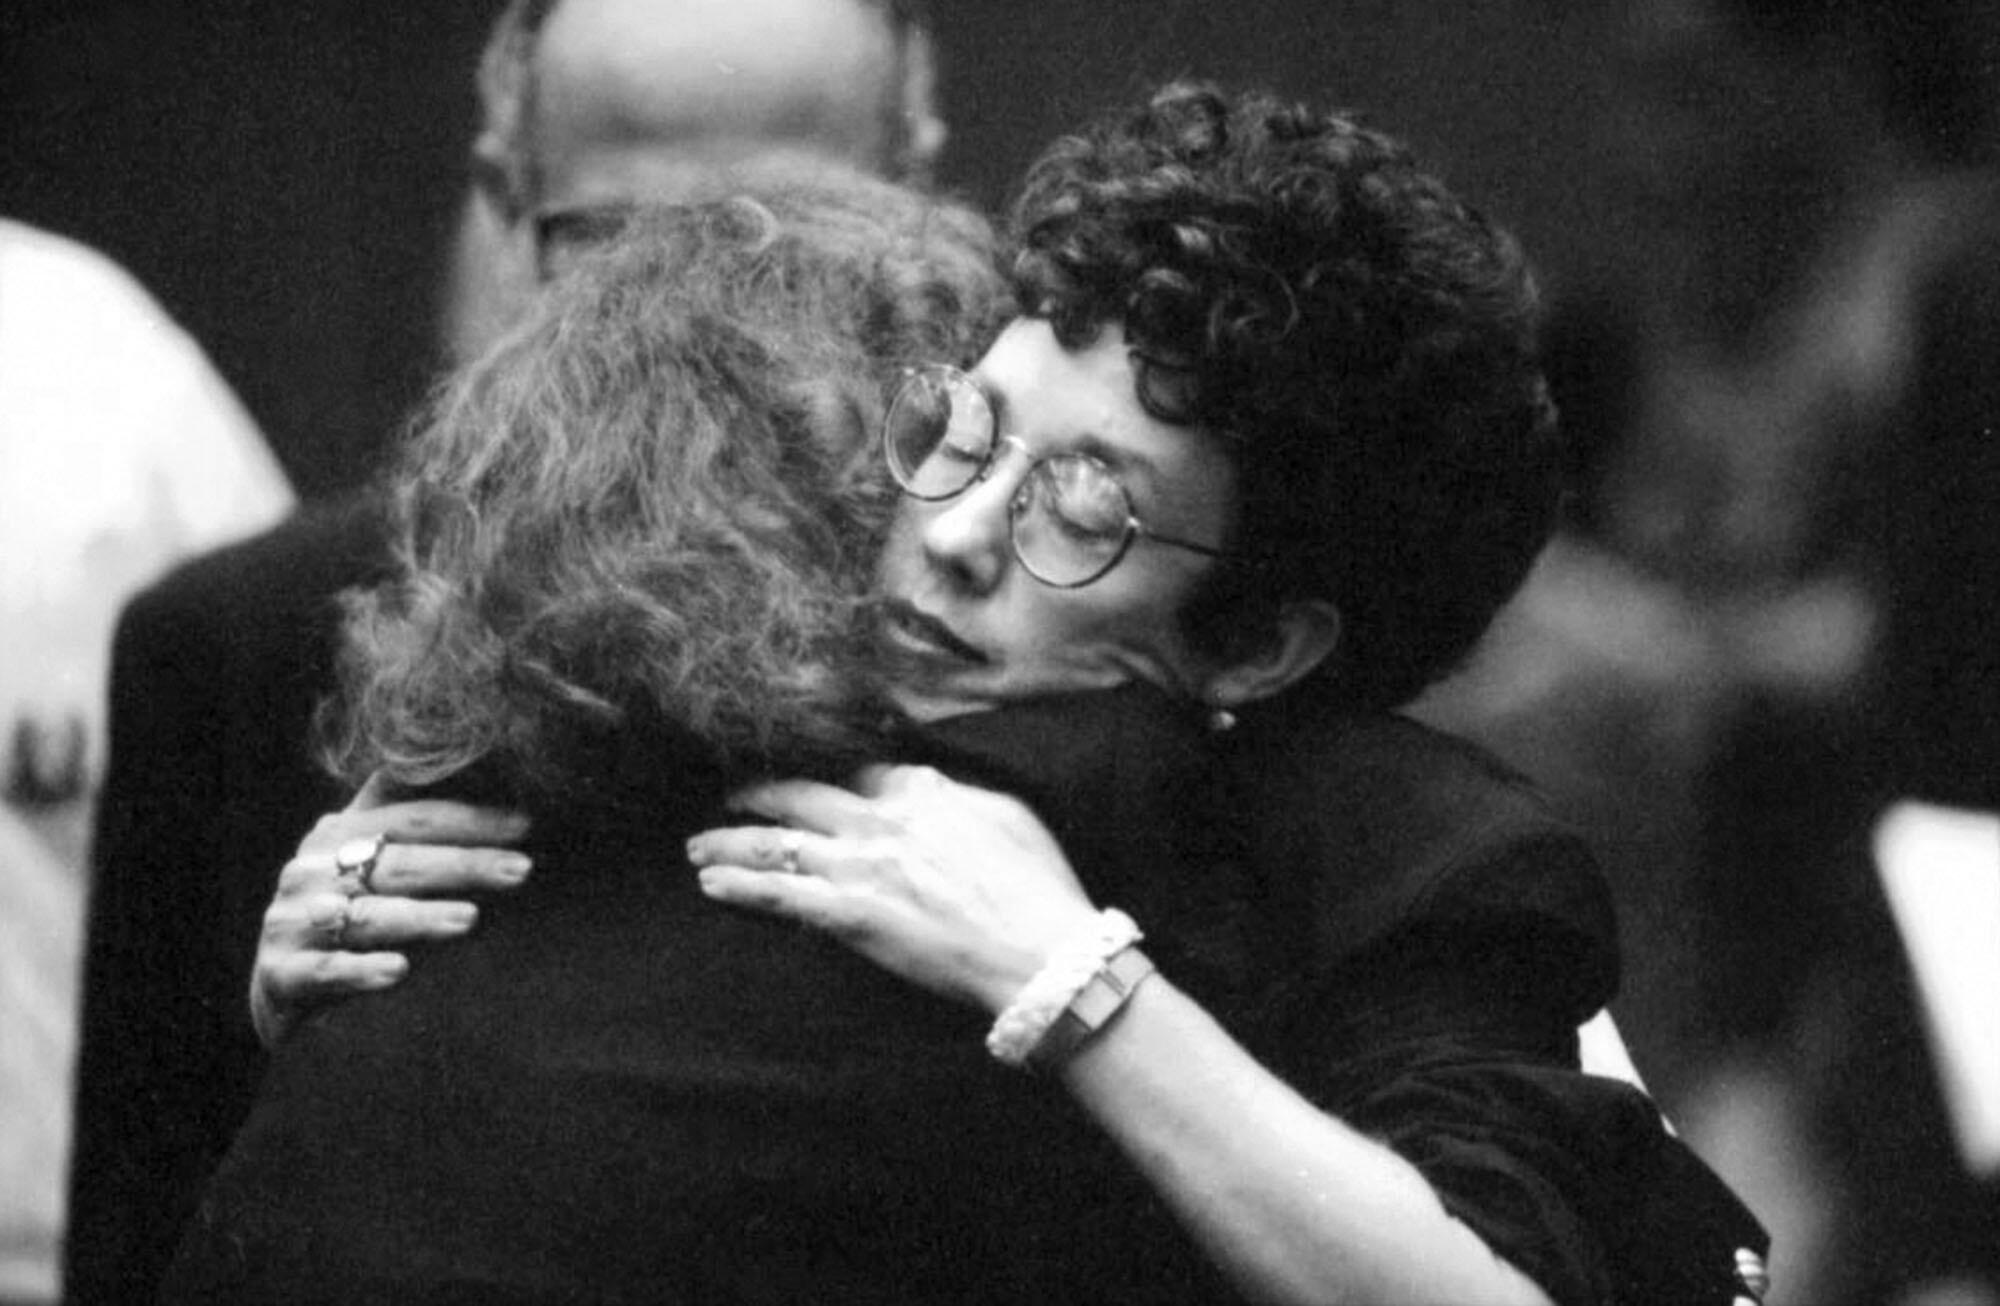 Two women embrace.